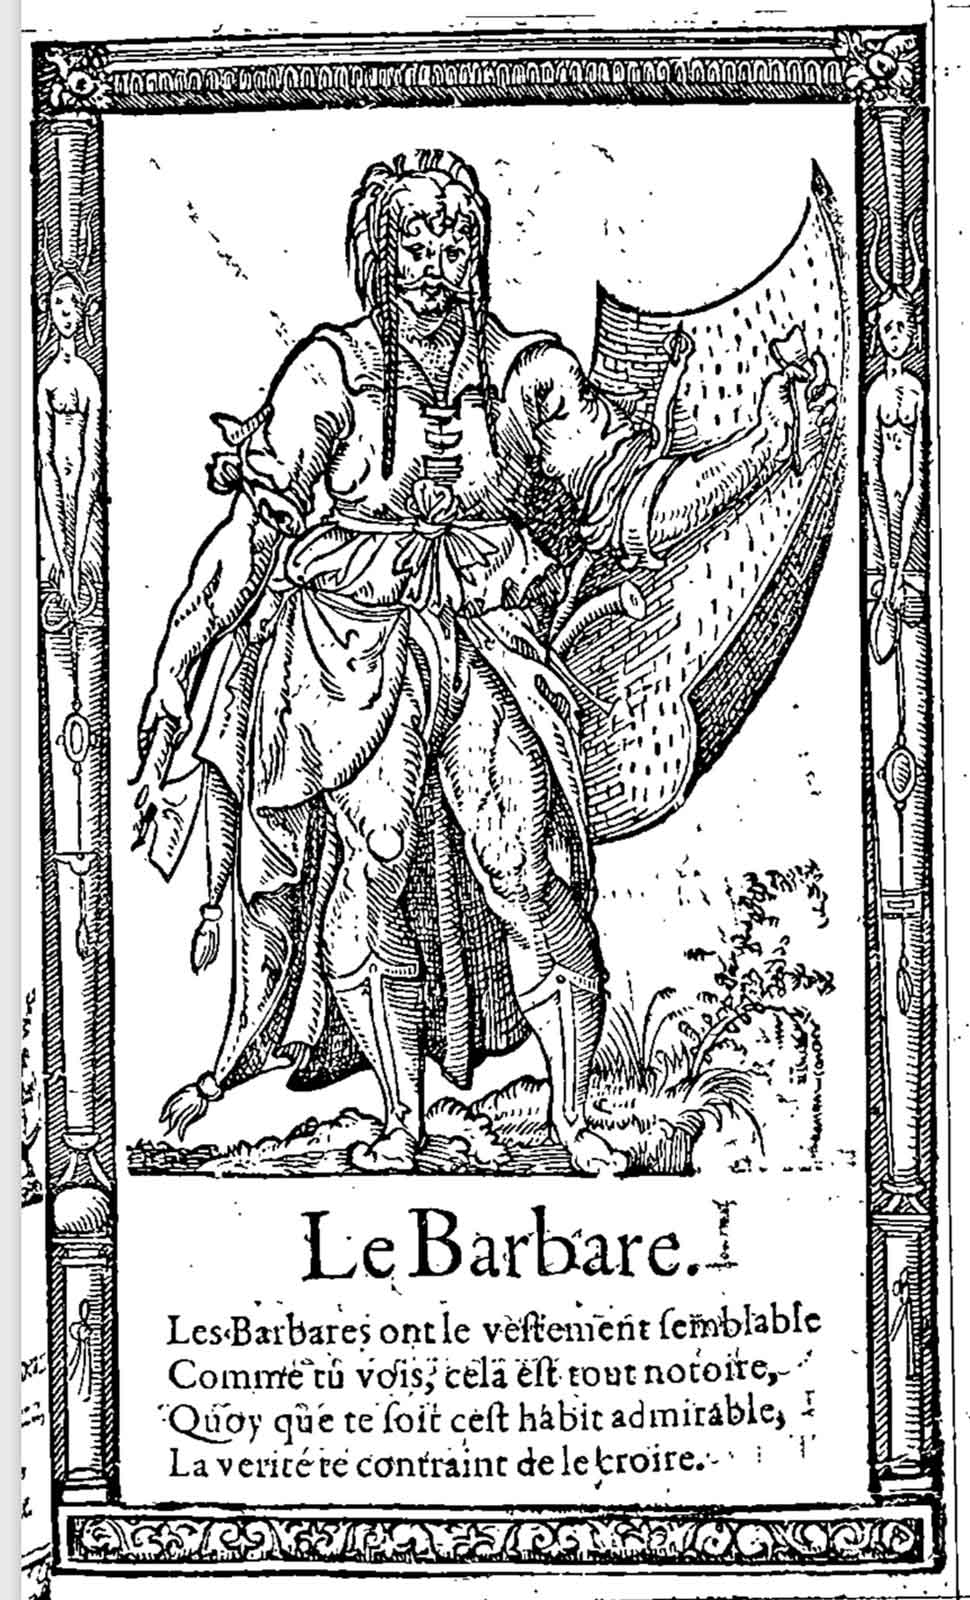 Le barbare. Desprez, Recueil de la diversité des habits (1564)